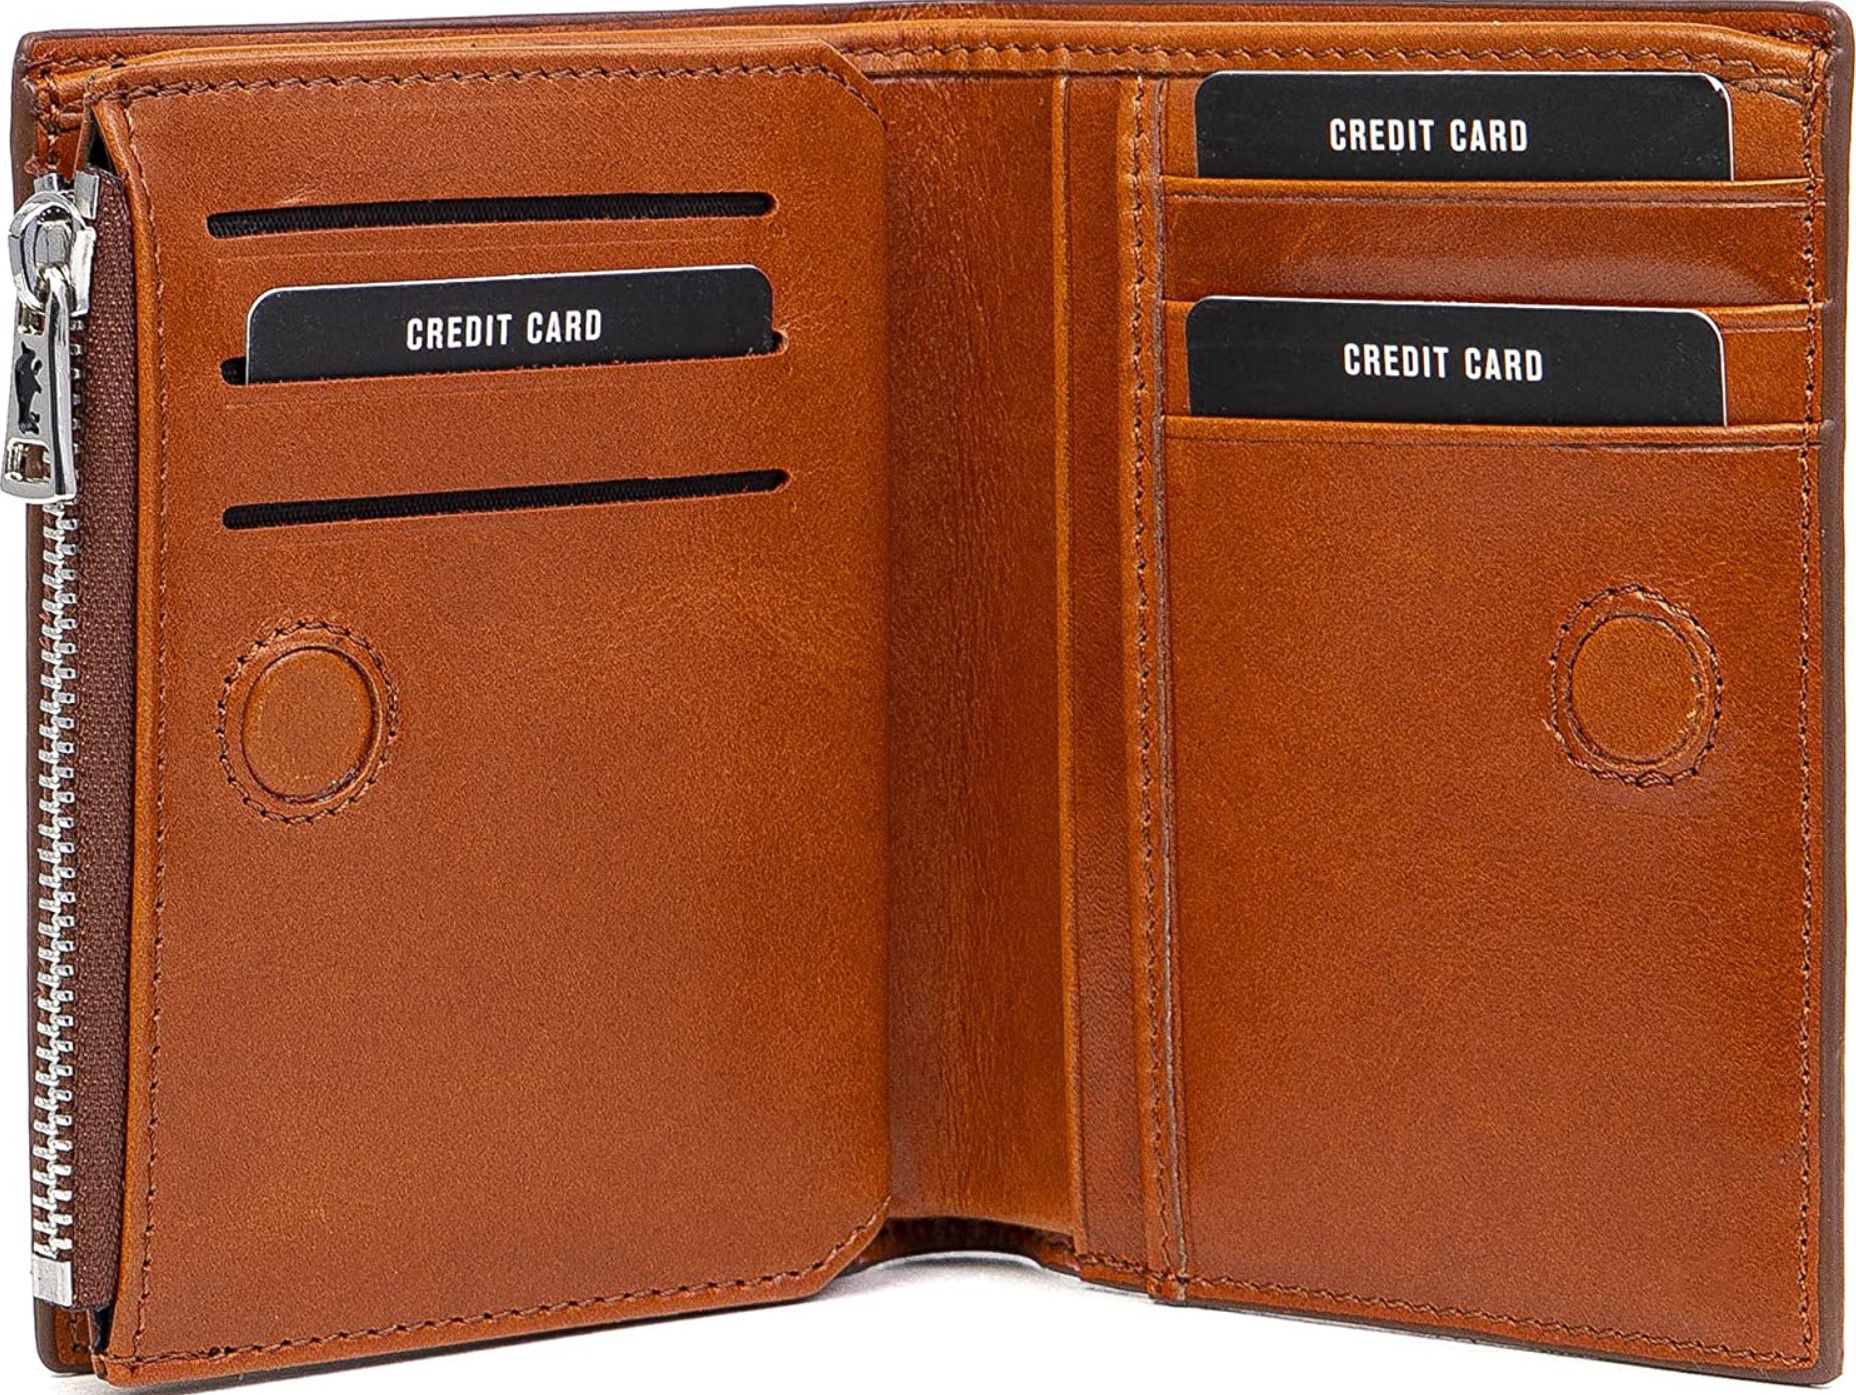 Solo Pelle Kompa Herren Leder slim Wallet mit Münzfach und RFID Schutz für 29,90€ (statt 60€)